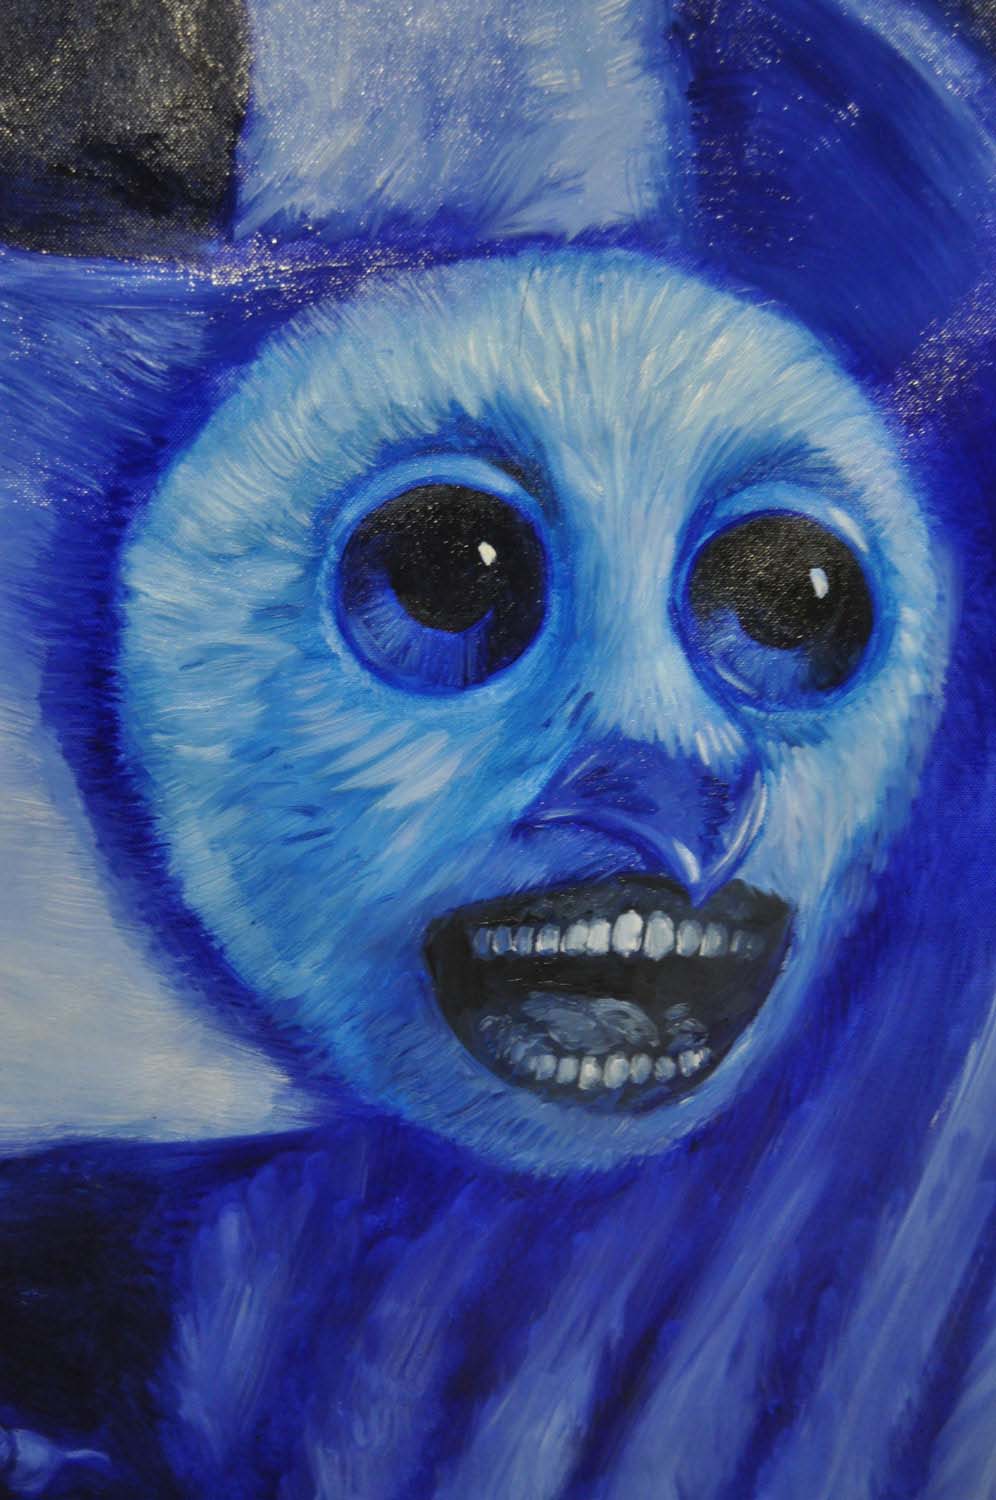 Détail du visage-masque de la chouette, d'un bleu plus léger et acidulé que le reste du tableau. Ses yeux sont ronds, envahissants et regardent hors du tabelau. La bouche ouverte, presque noire, semble crier.